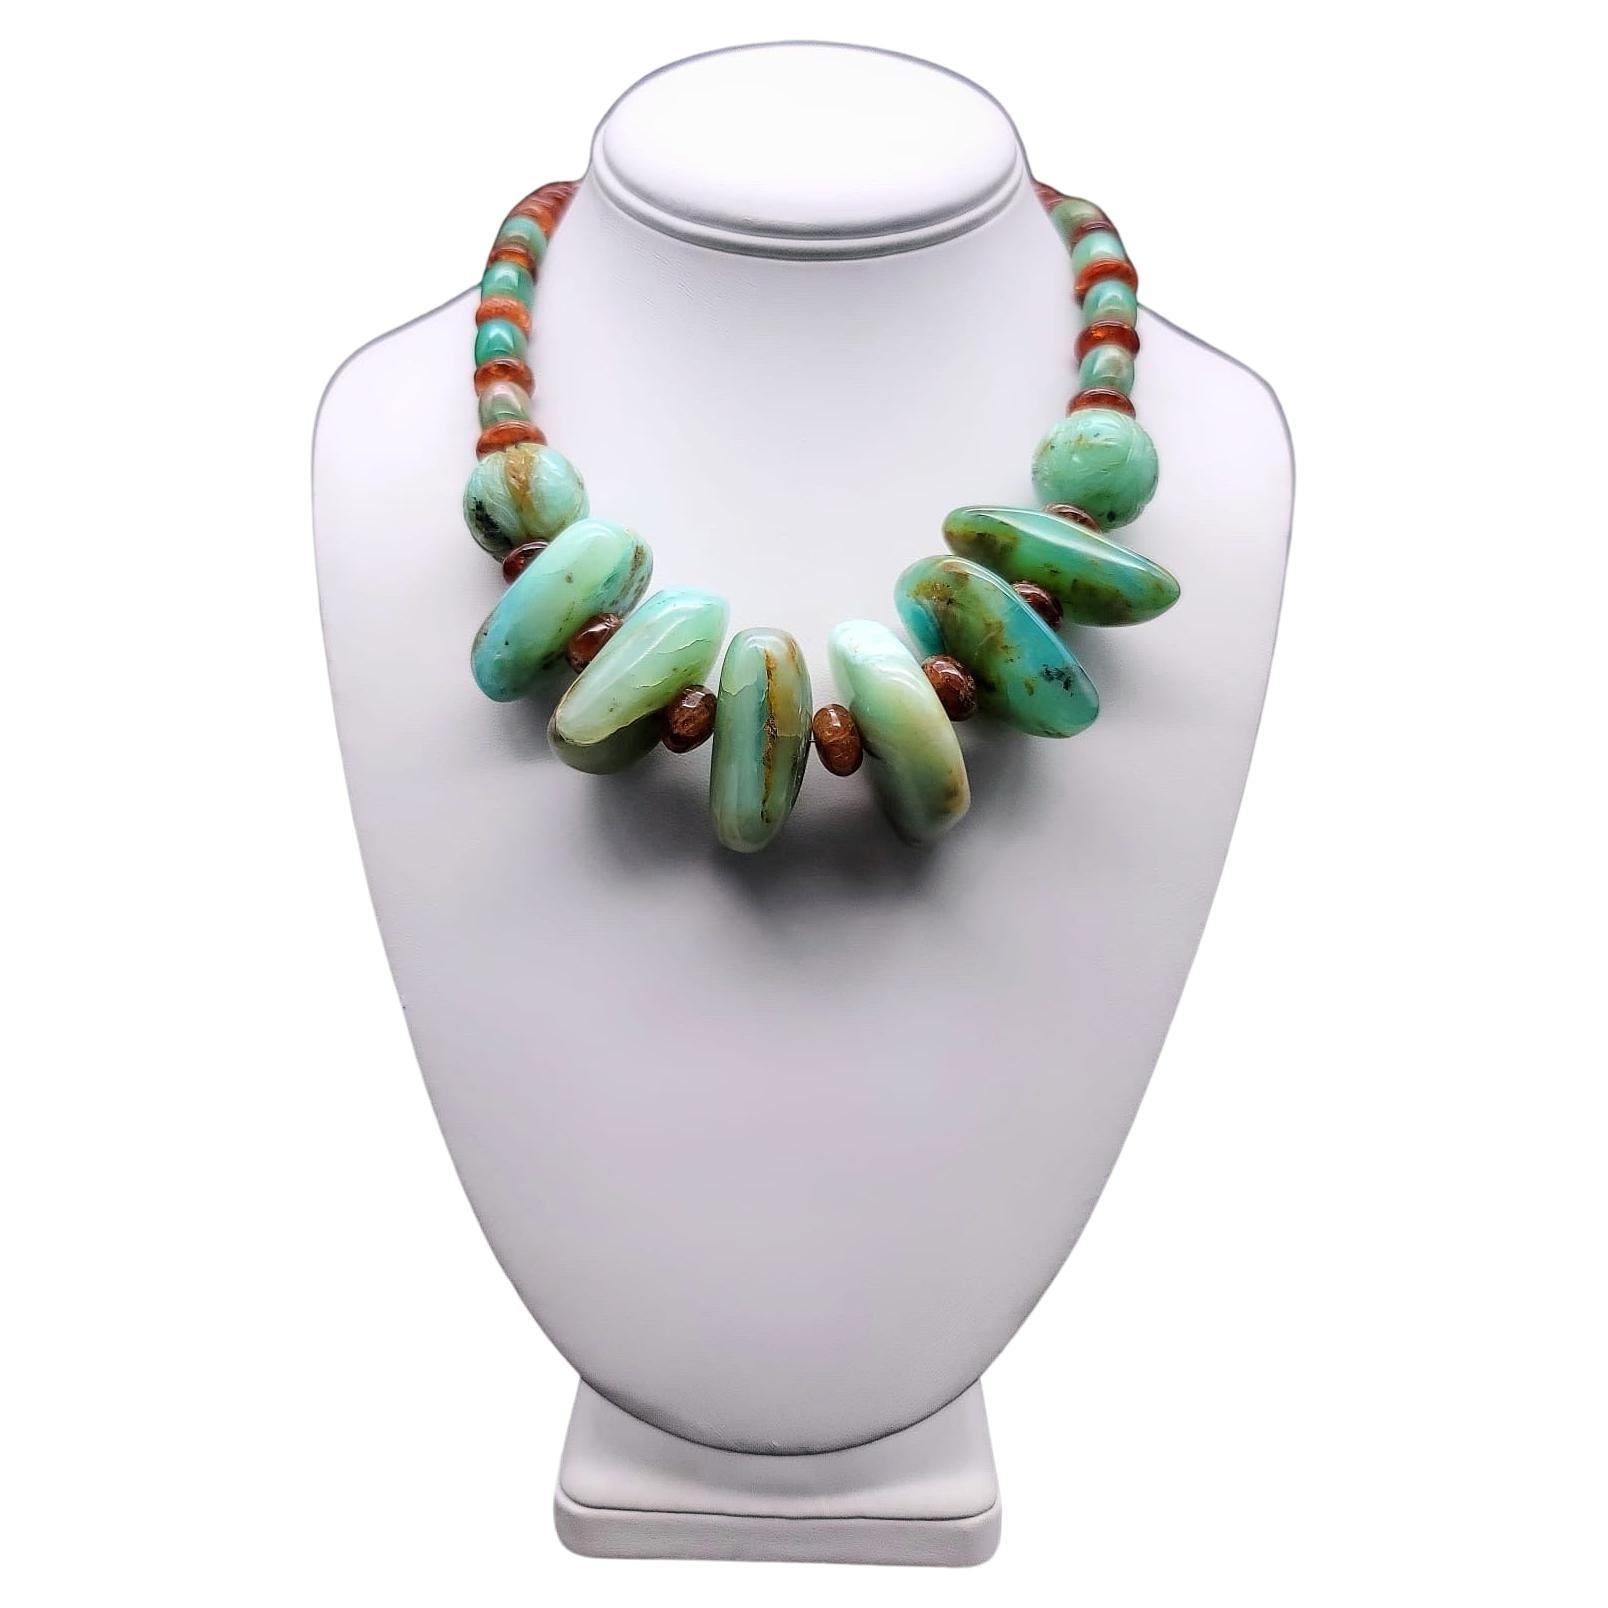 Magnifique collier d'opale péruvienne A.Jeschel.